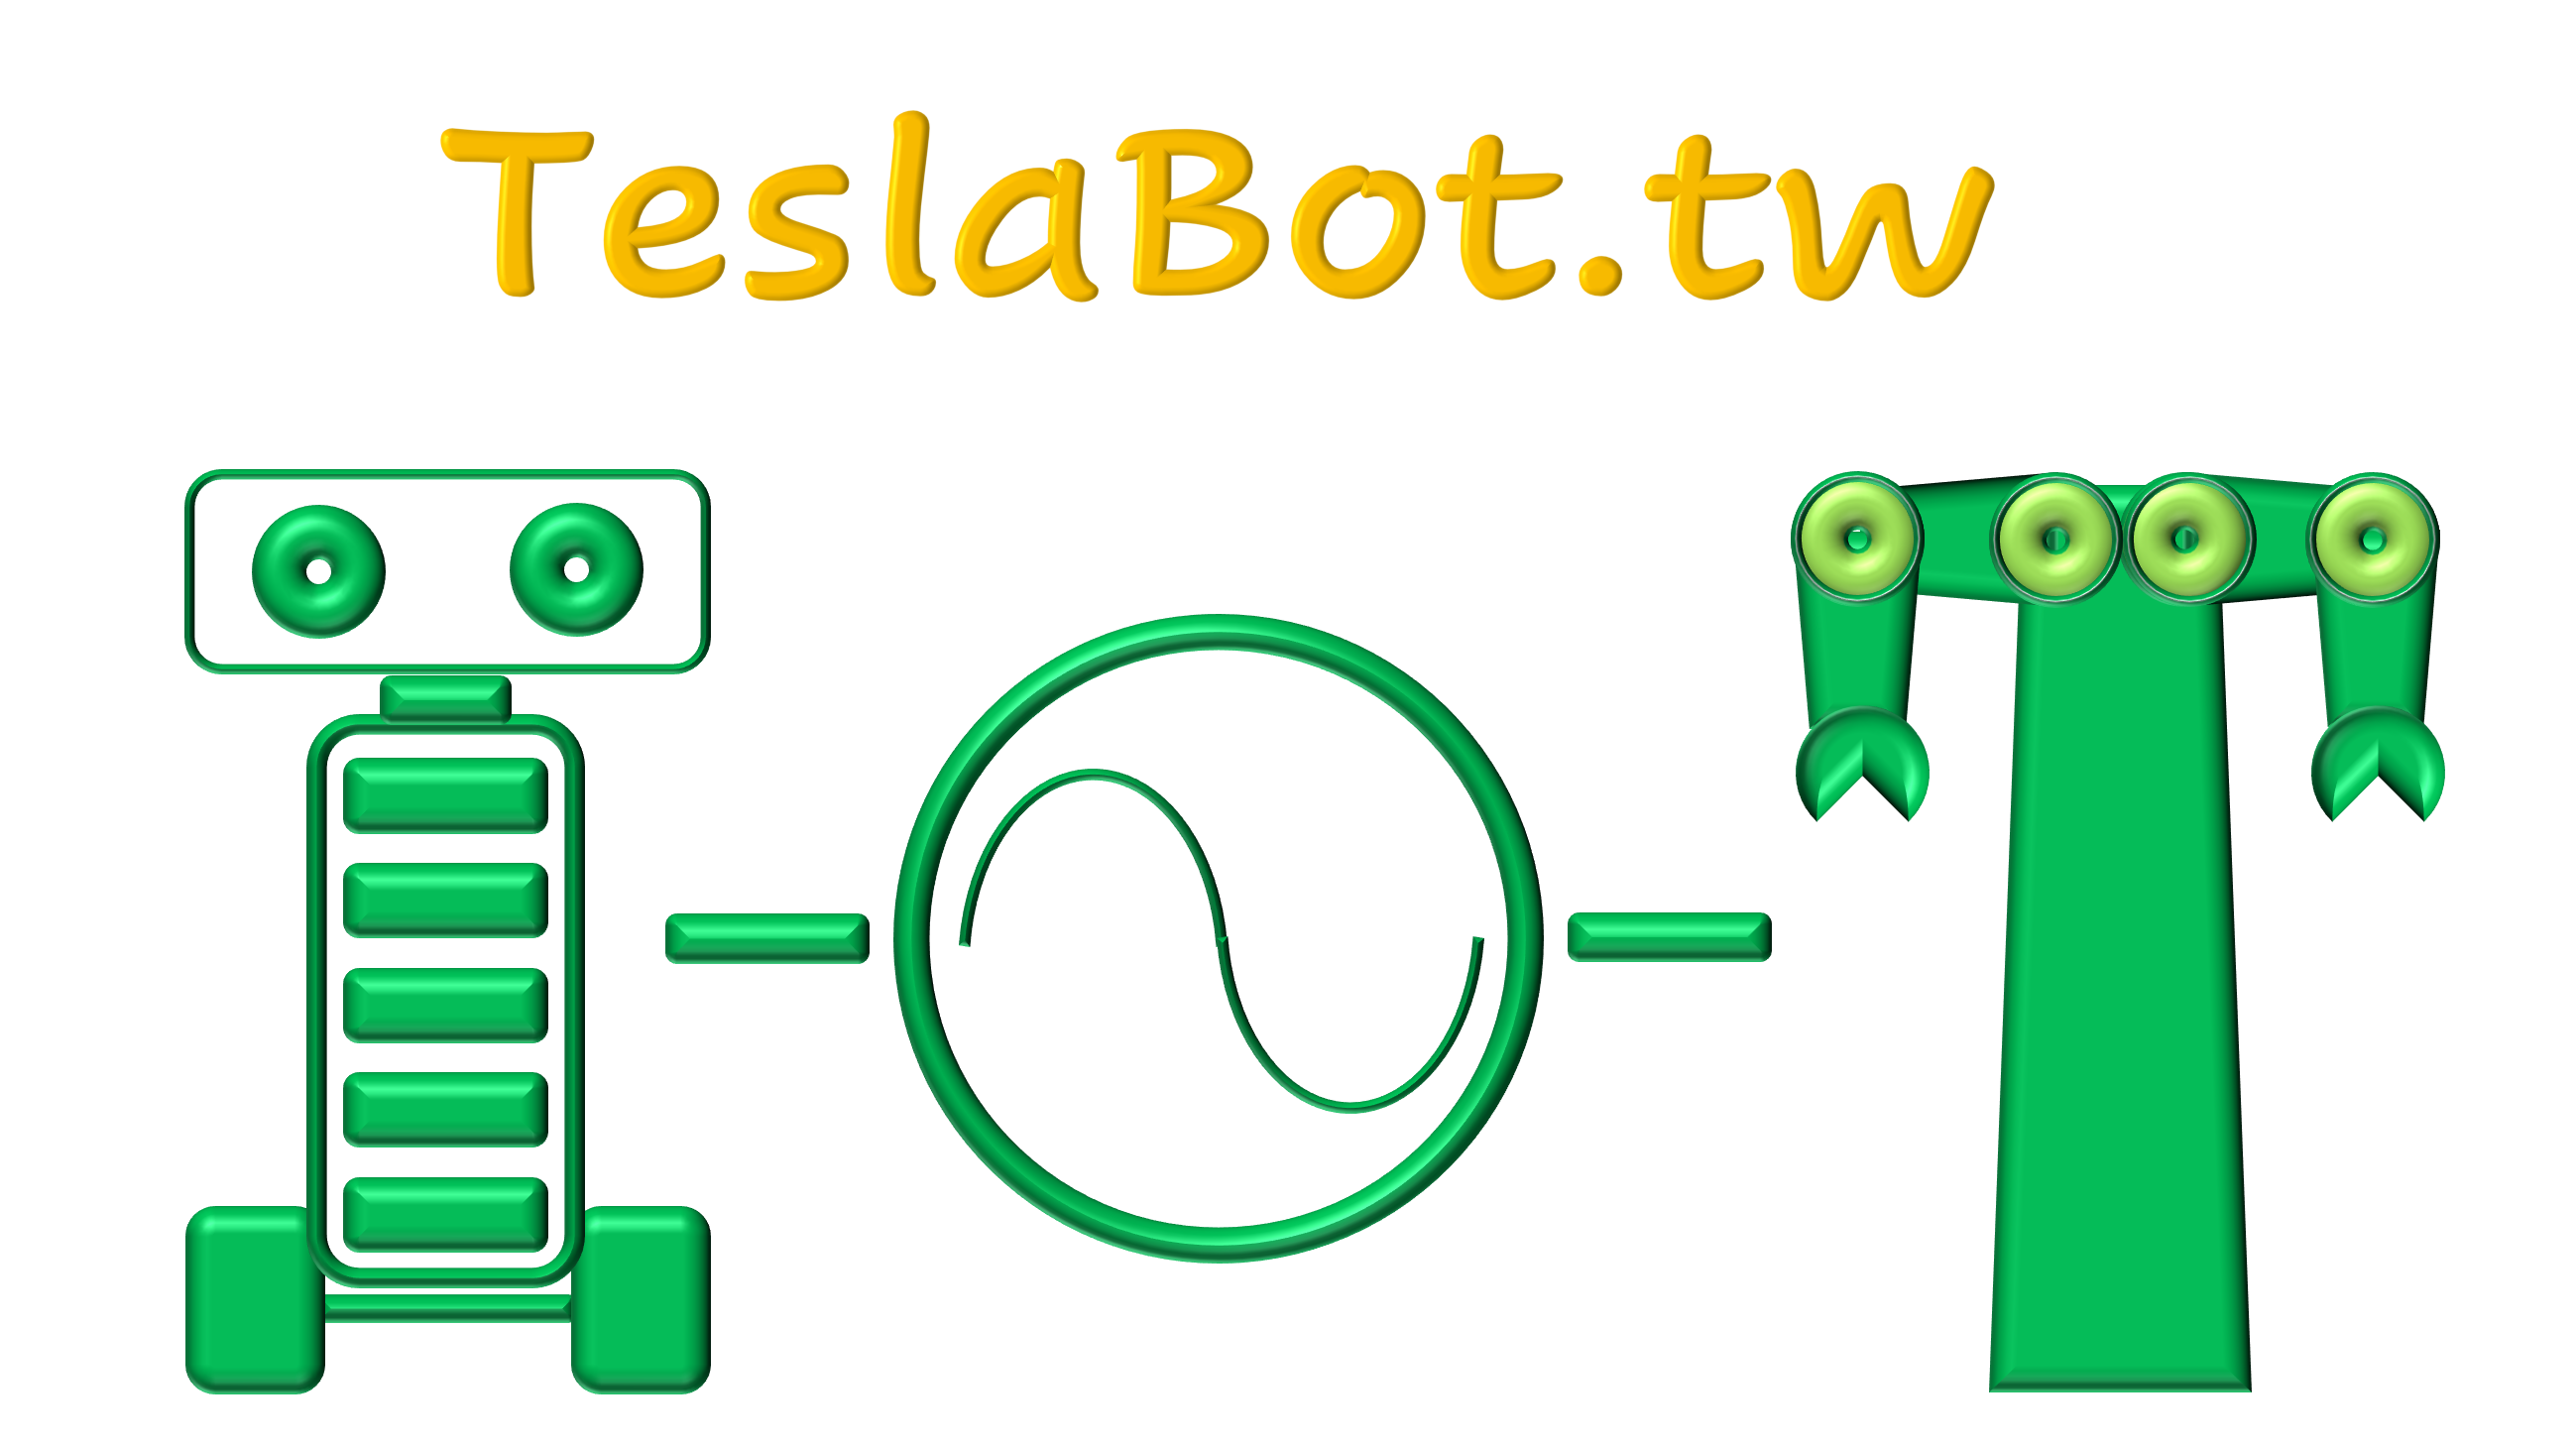 特斯拉伯伯 – TeslaBot.tw